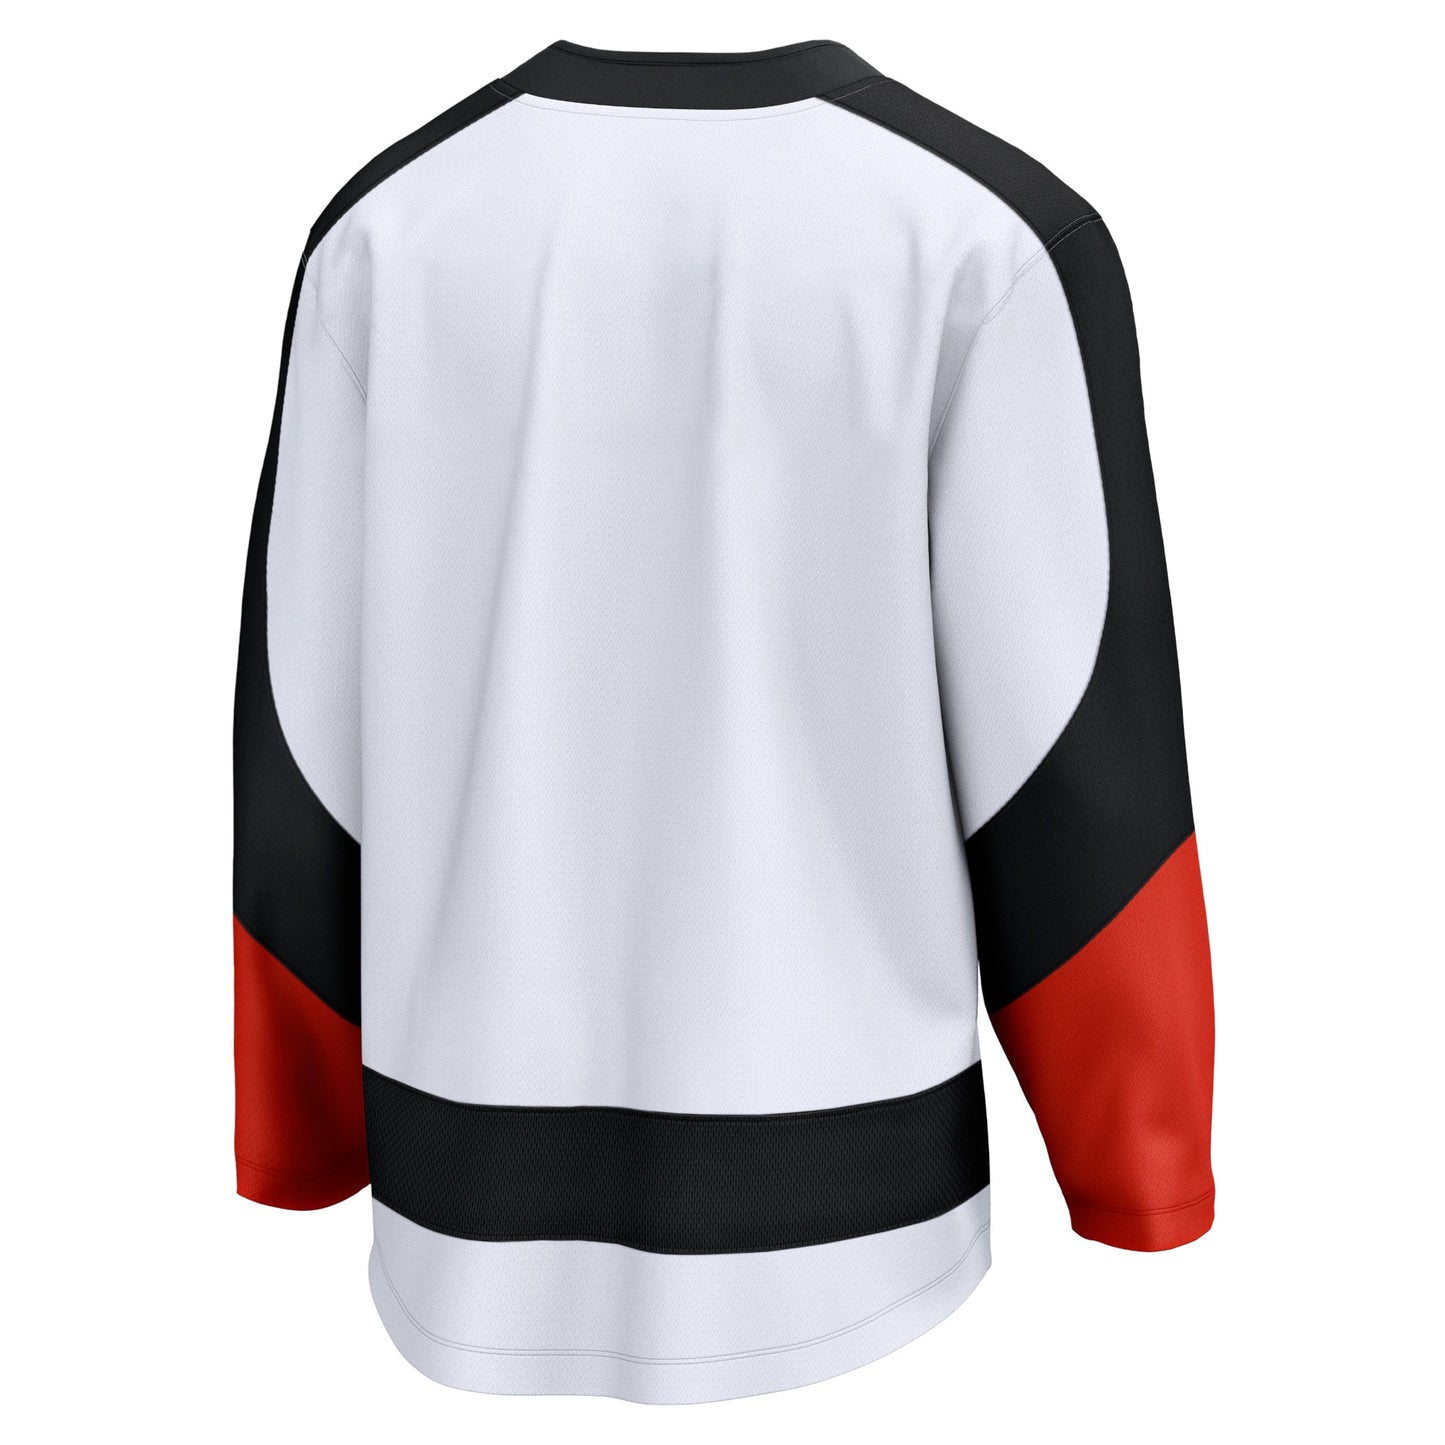 Philadelphia Flyers Fanatics Branded Special Edition 2.0 Breakaway Blank Jersey - White